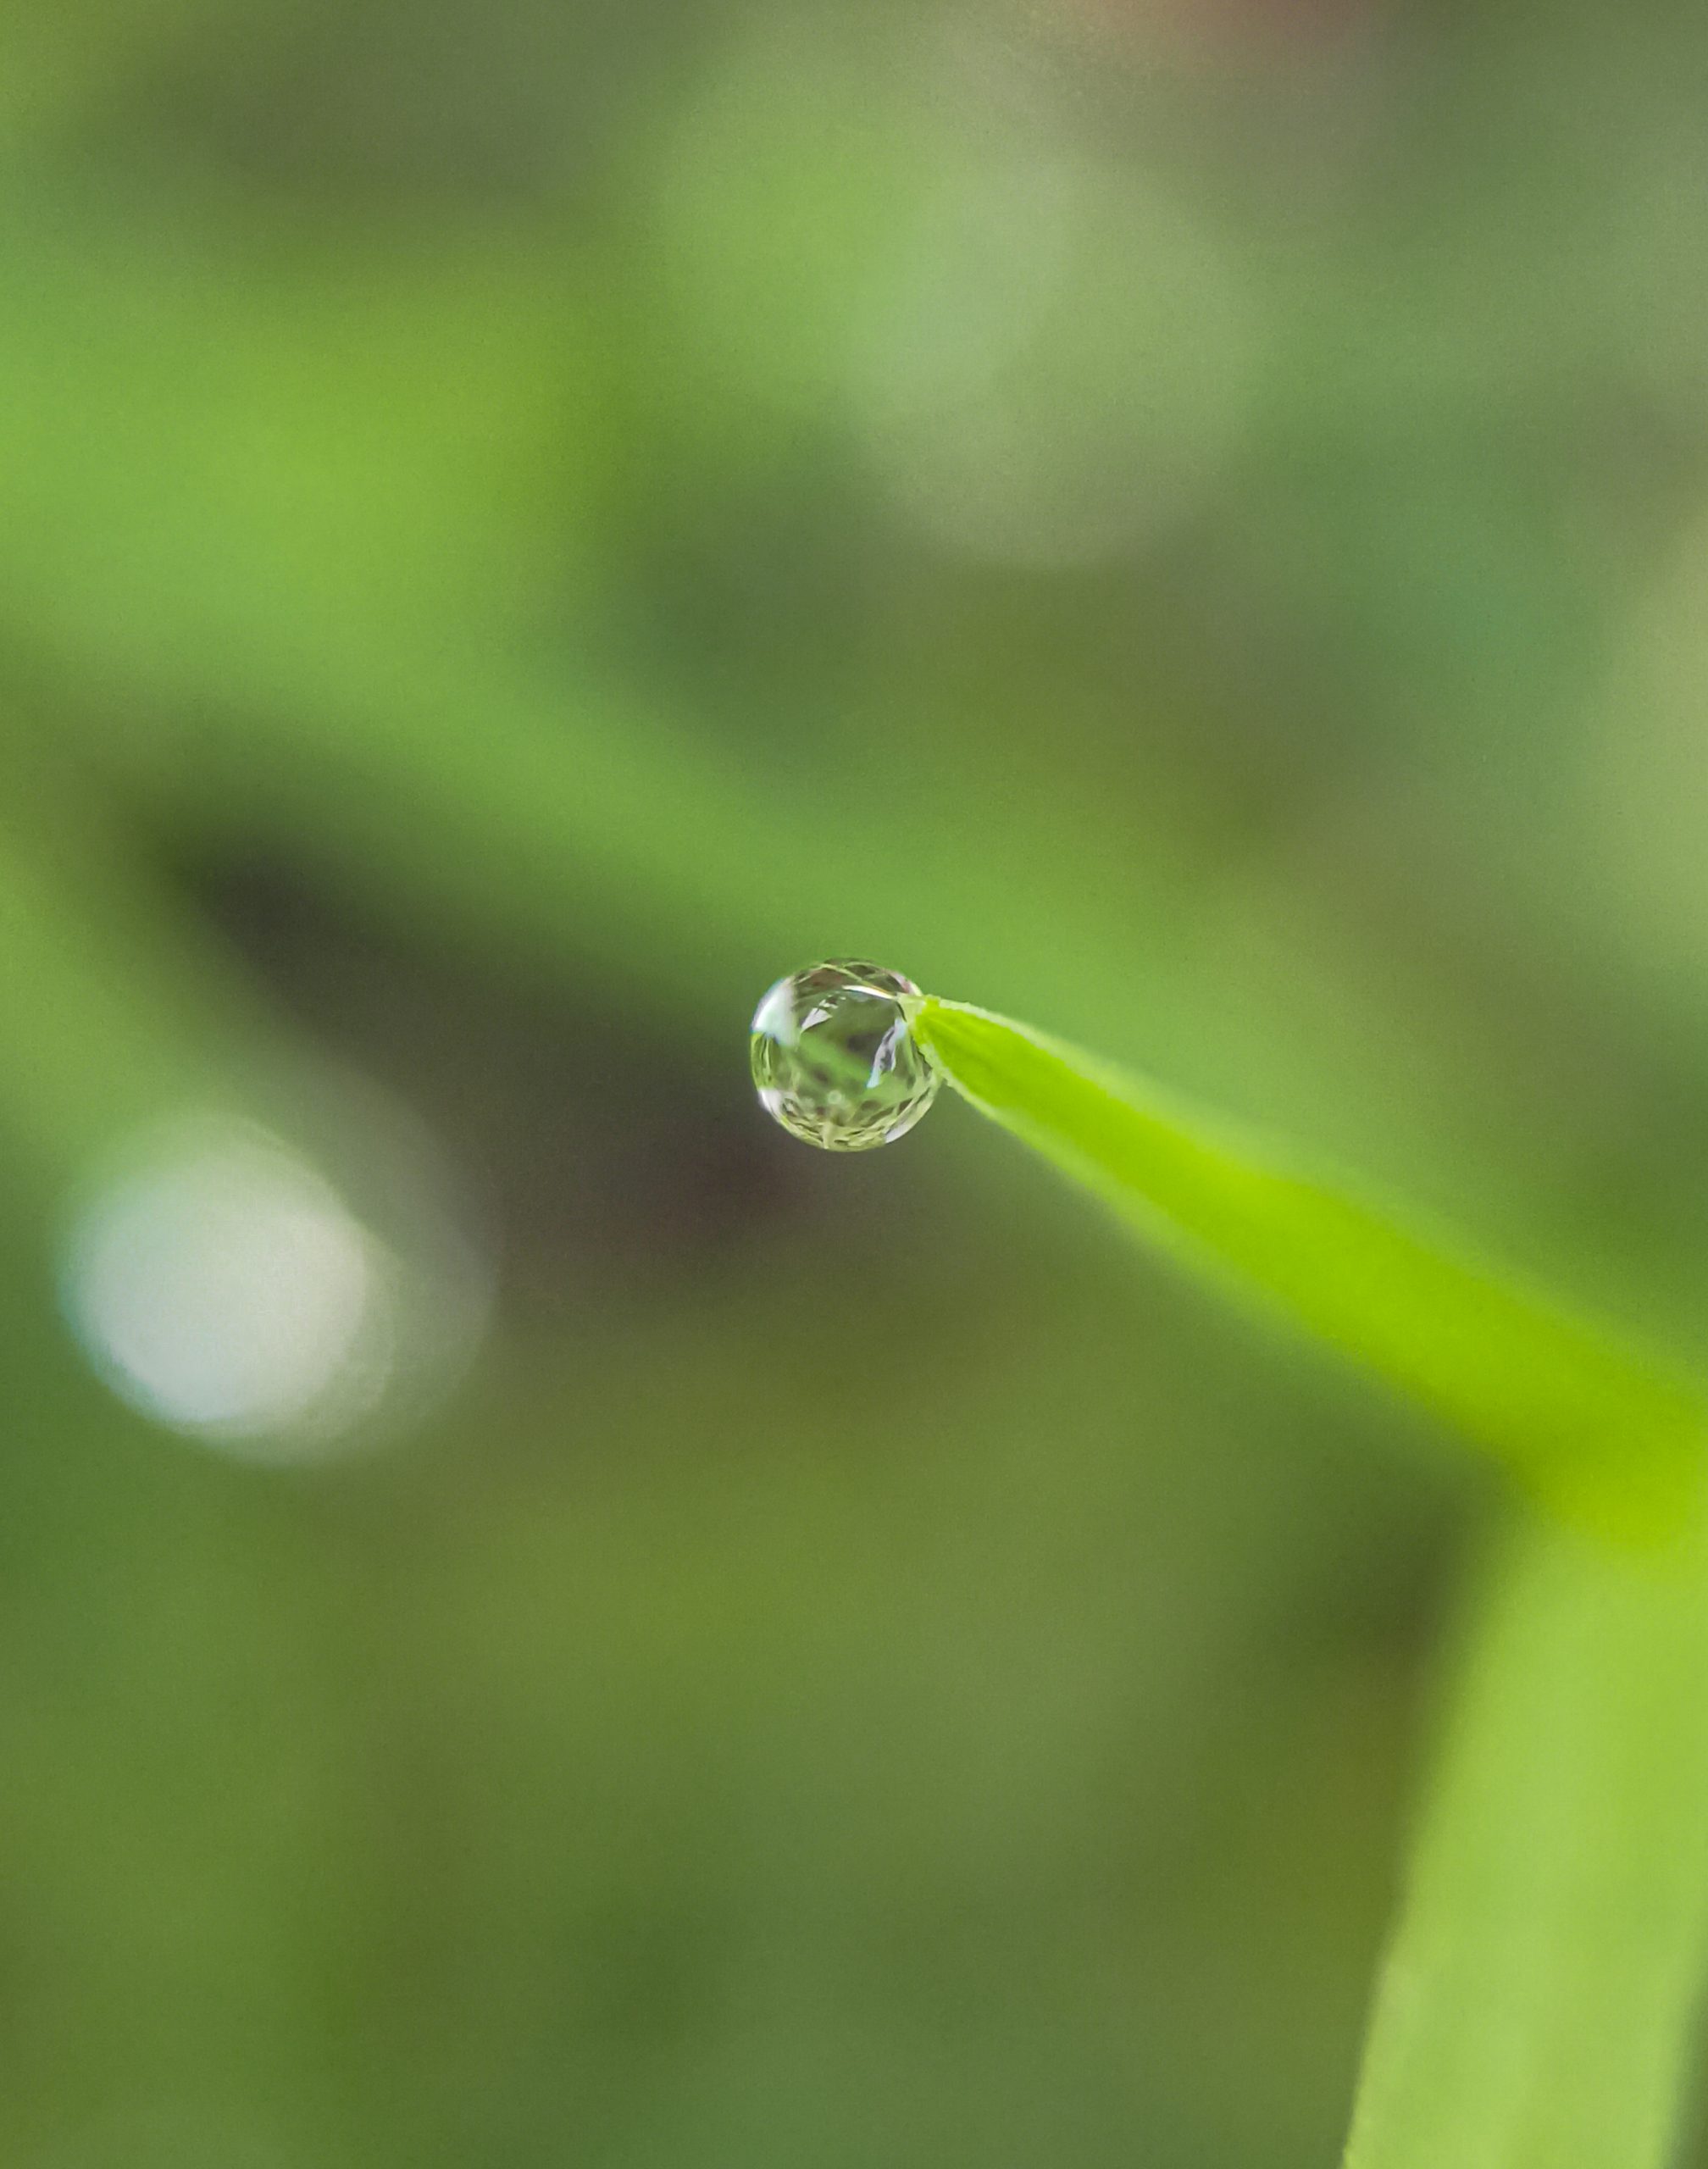 A droplet